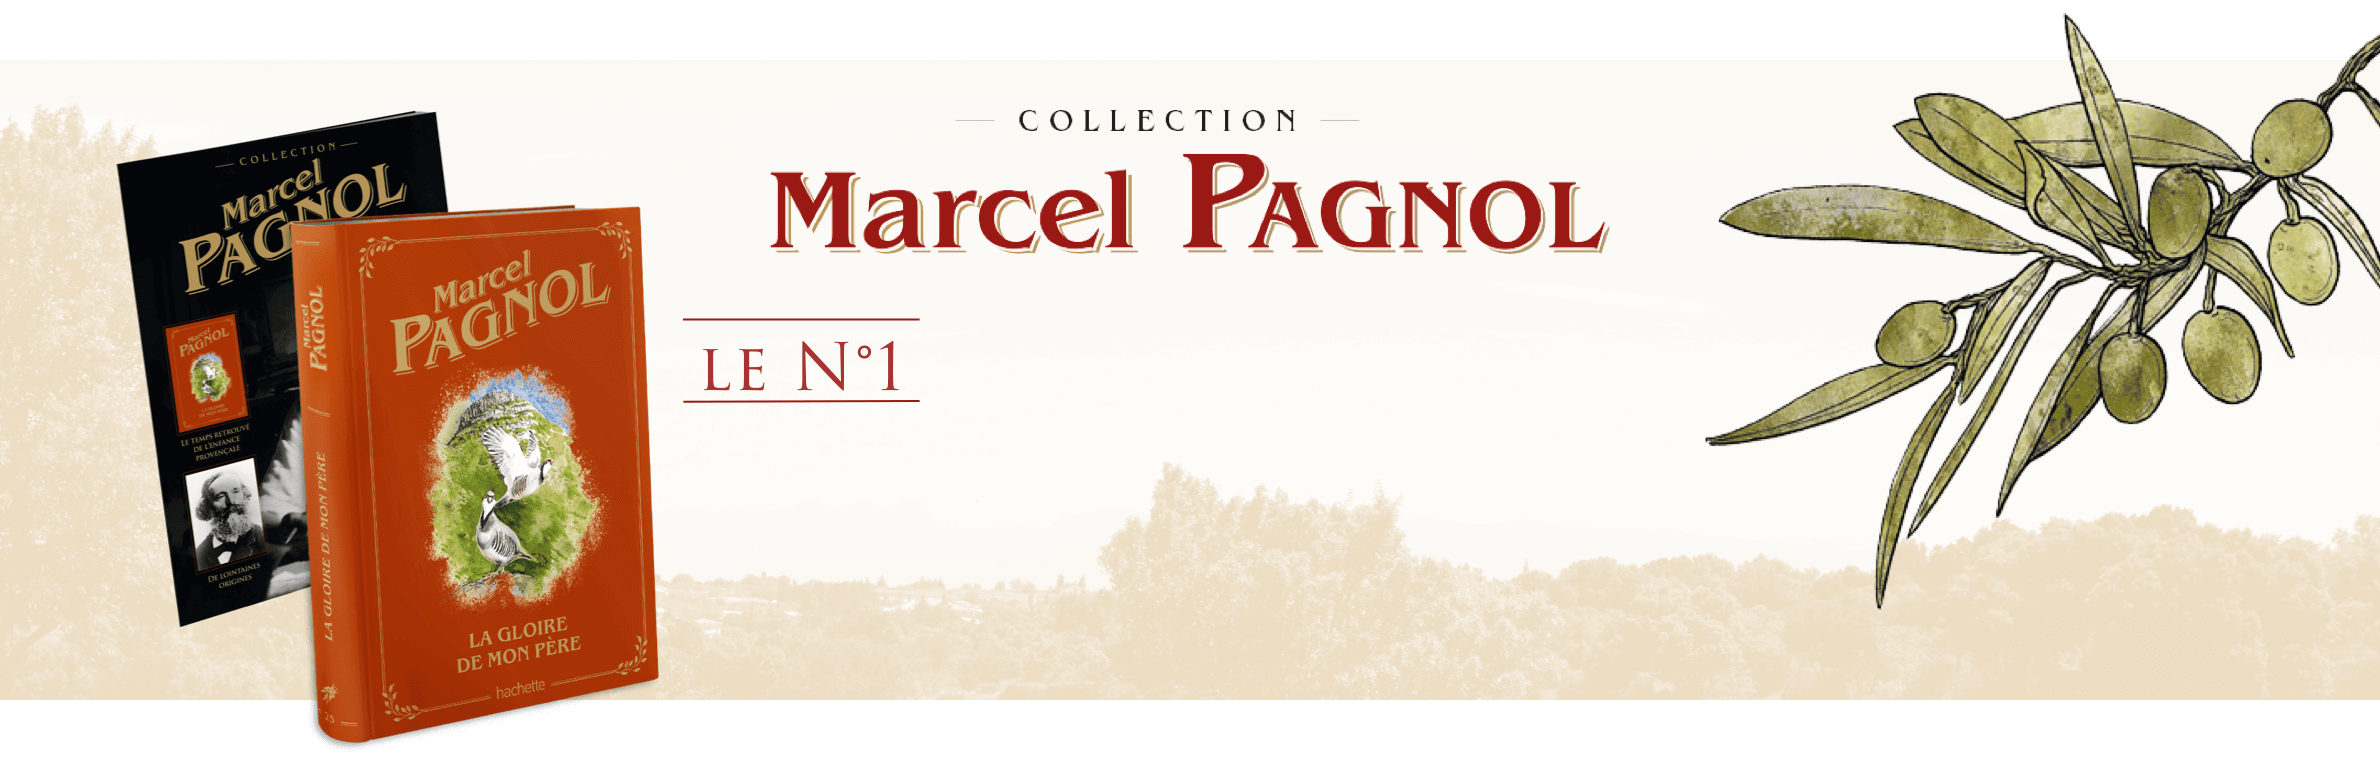 Marcel Pagnol - L'intégrale de l'auteur inoubliable